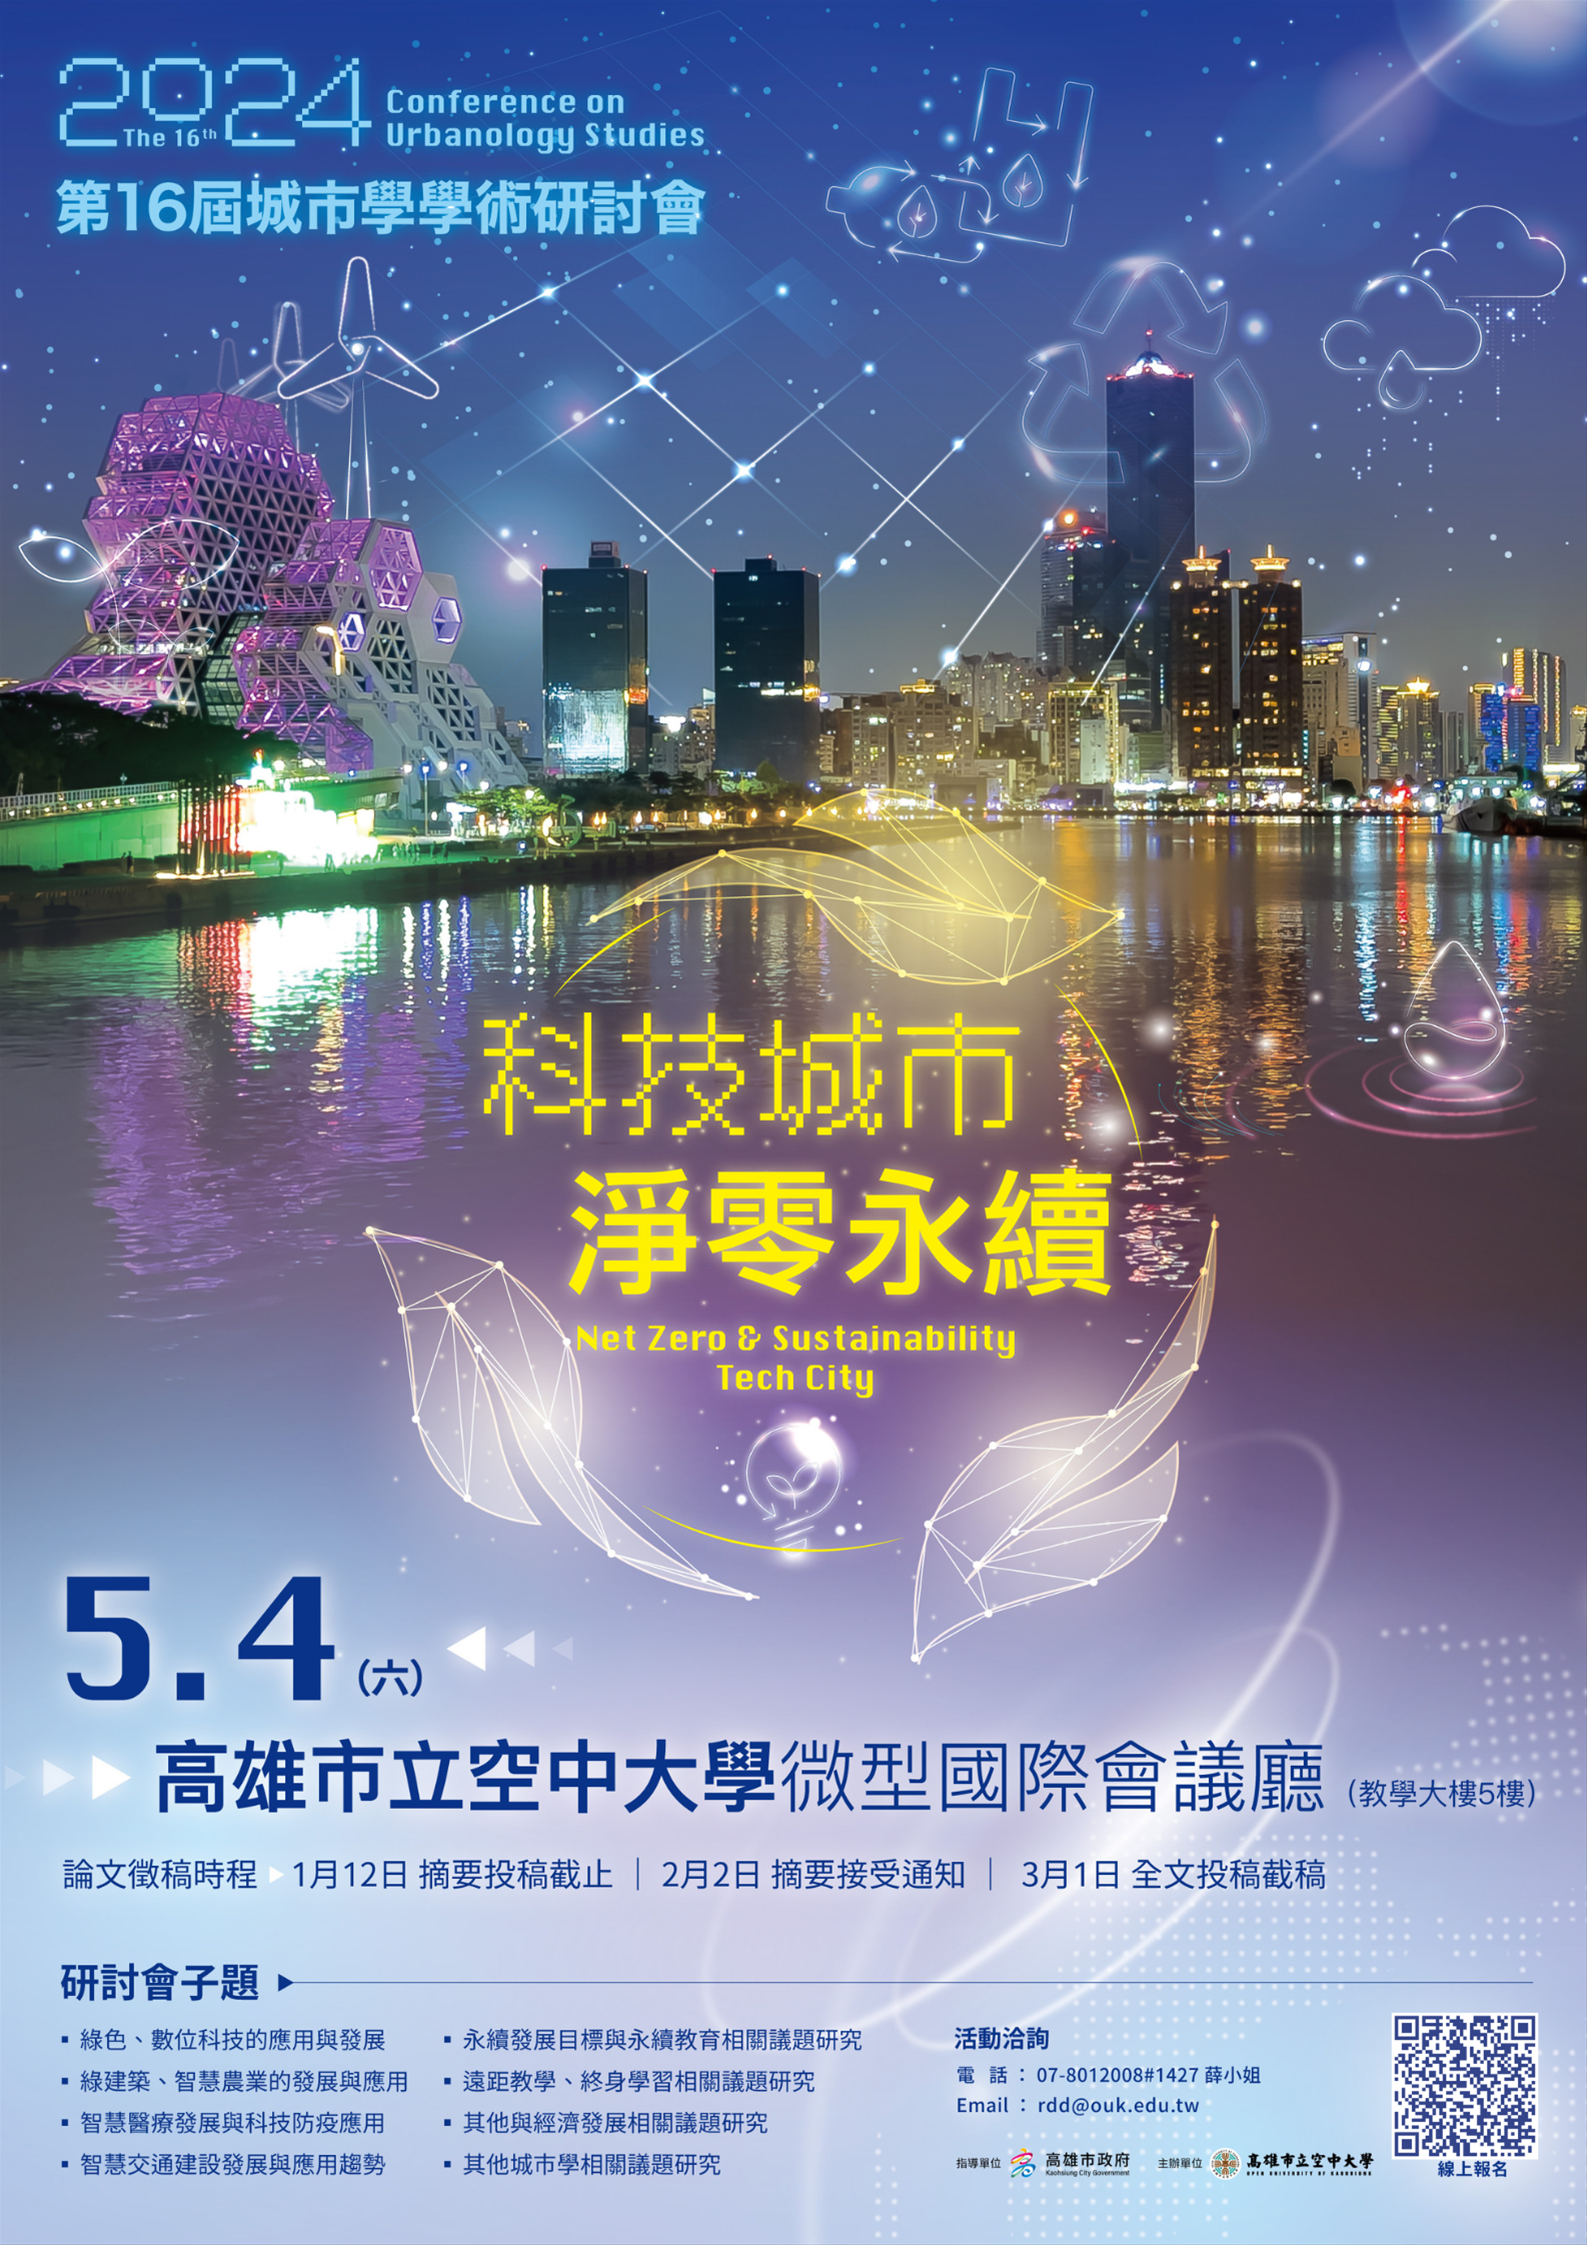 【【轉知】第16屆城市學學術研討會-「科技城市 淨零永續」訂於5月4日(六)舉行。】